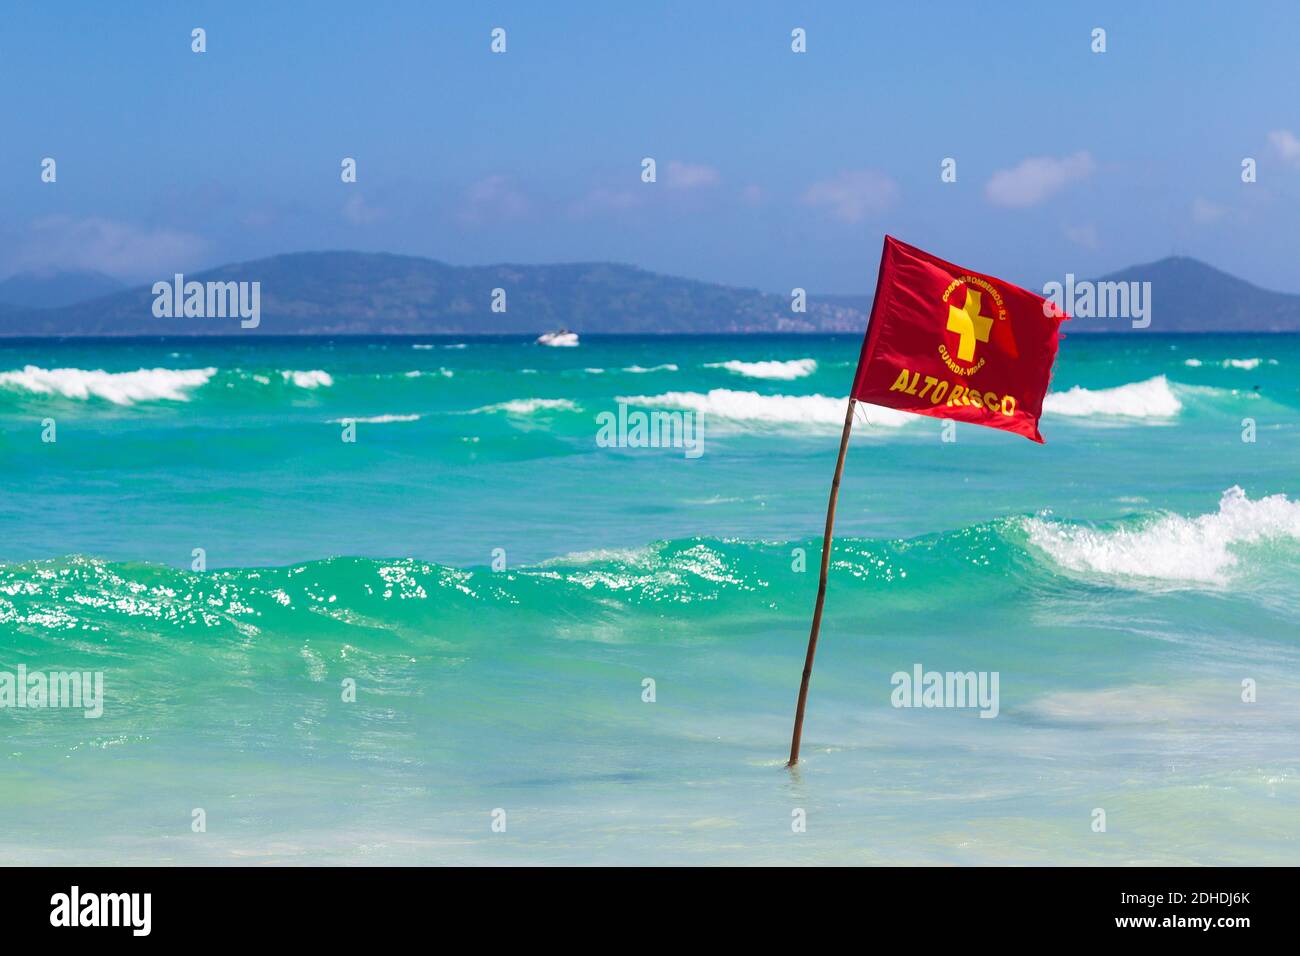 Signe d'avertissement d'un drapeau rouge sur une belle plage avec un ciel bleu et une mer turquoise. Do forte Beach à Cabo Frio, Rio de Janeiro, Brésil. Banque D'Images